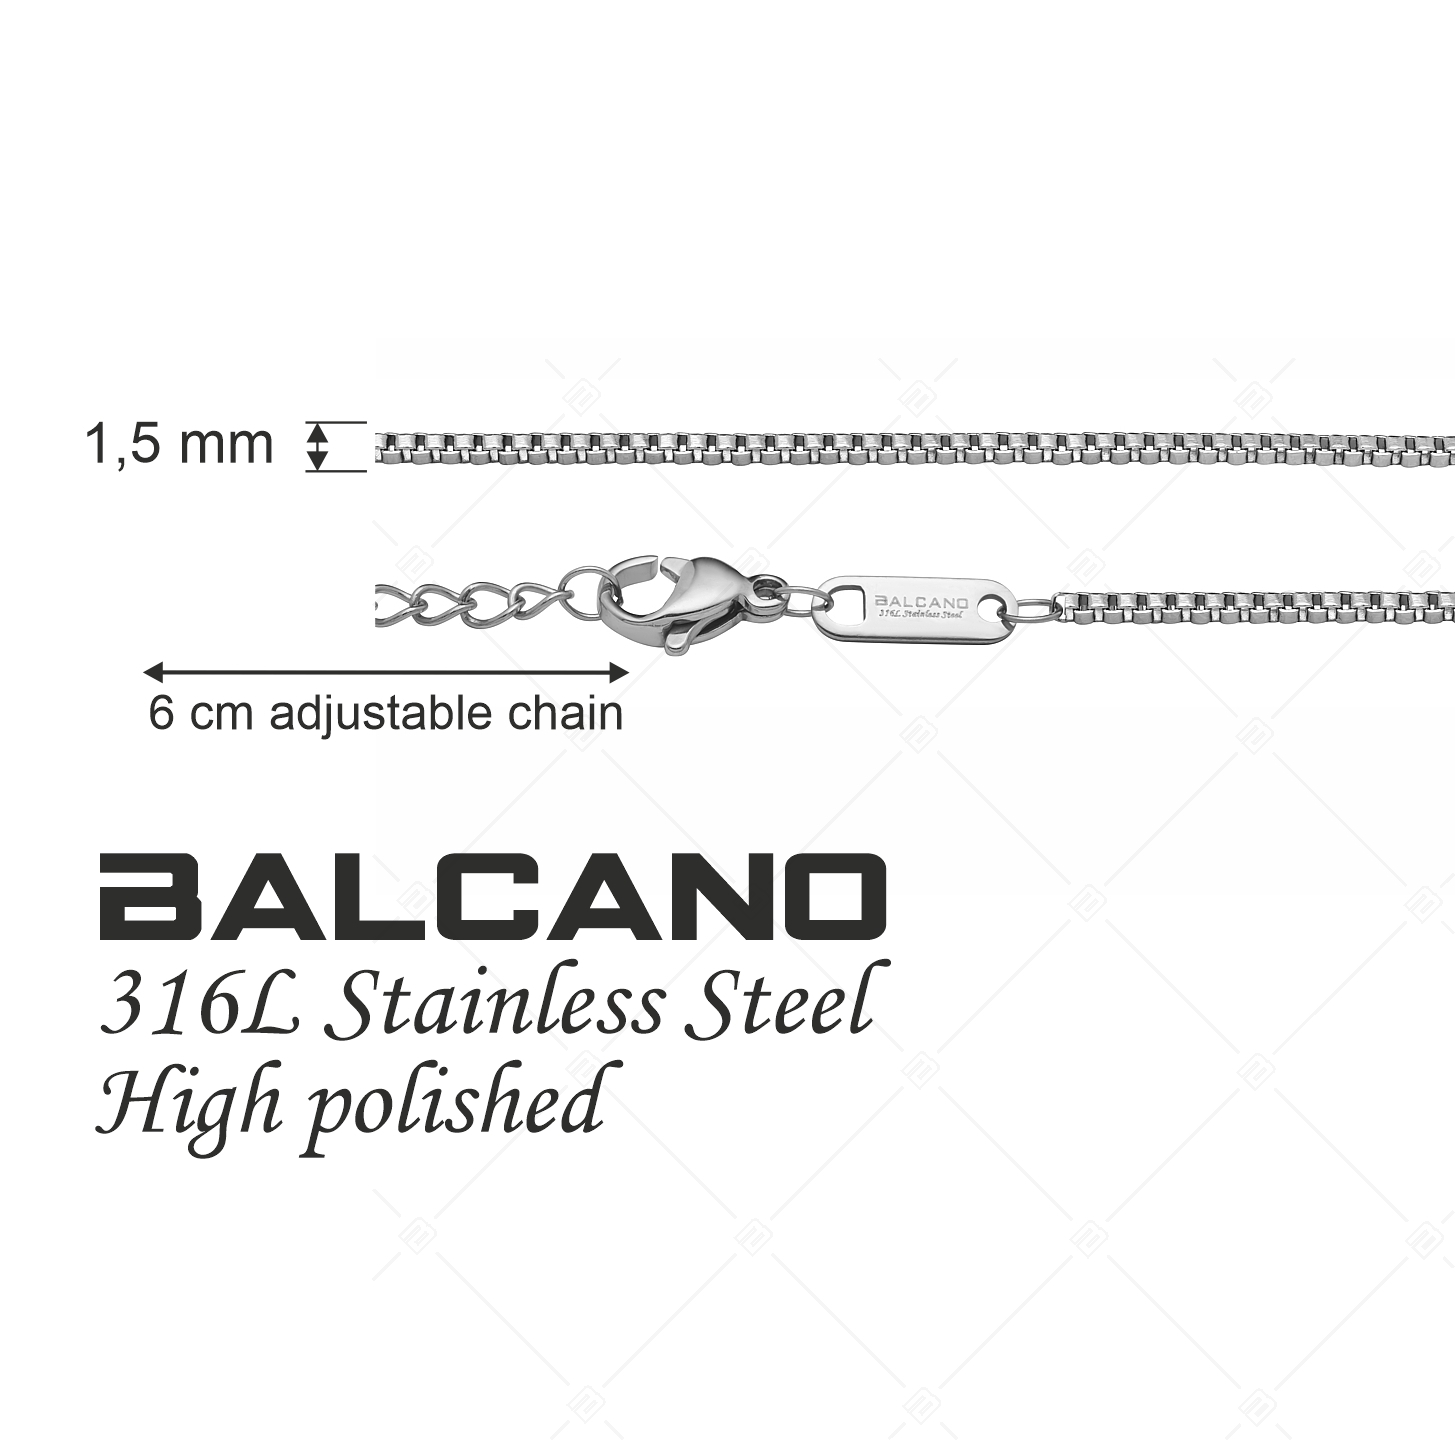 BALCANO - Venetian / Edelstahl Venezianer Kette-Fußkette mit Hochglanzpolierung - 1,5 mm (751292BC97)